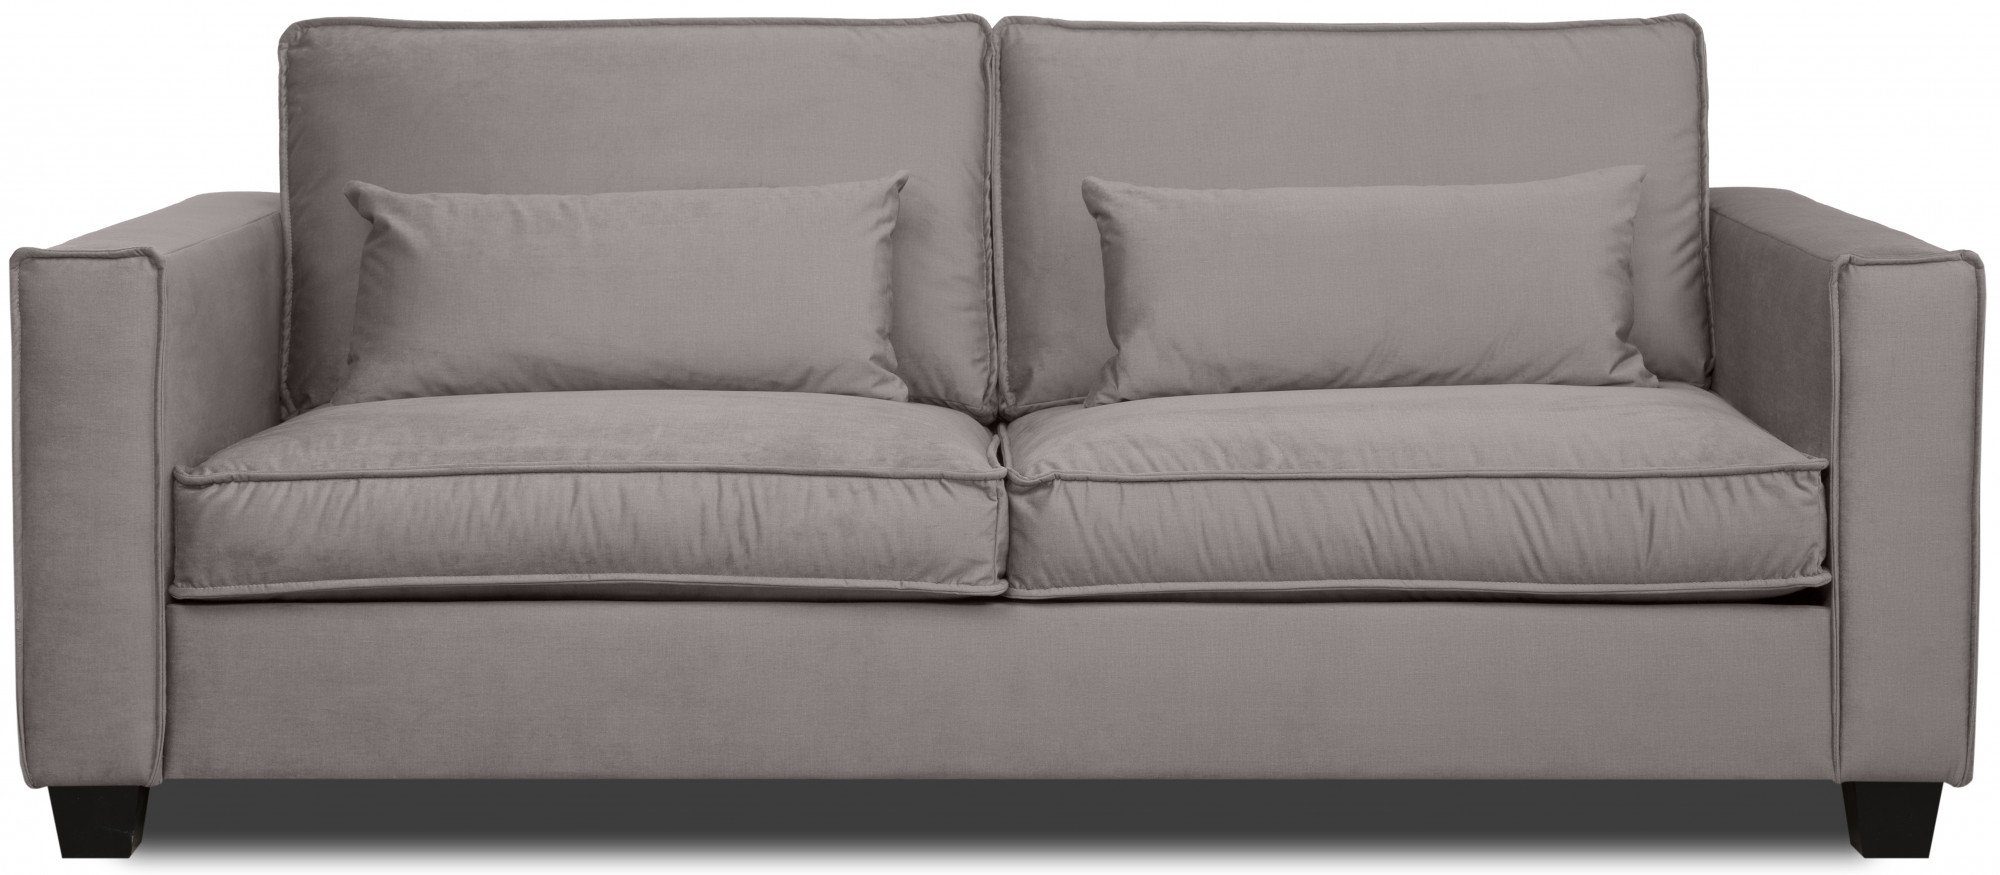 Tilques, beige Sitzgelegenheiten, viele Home Farben 2-Sitzer affaire verfügbar bequeme